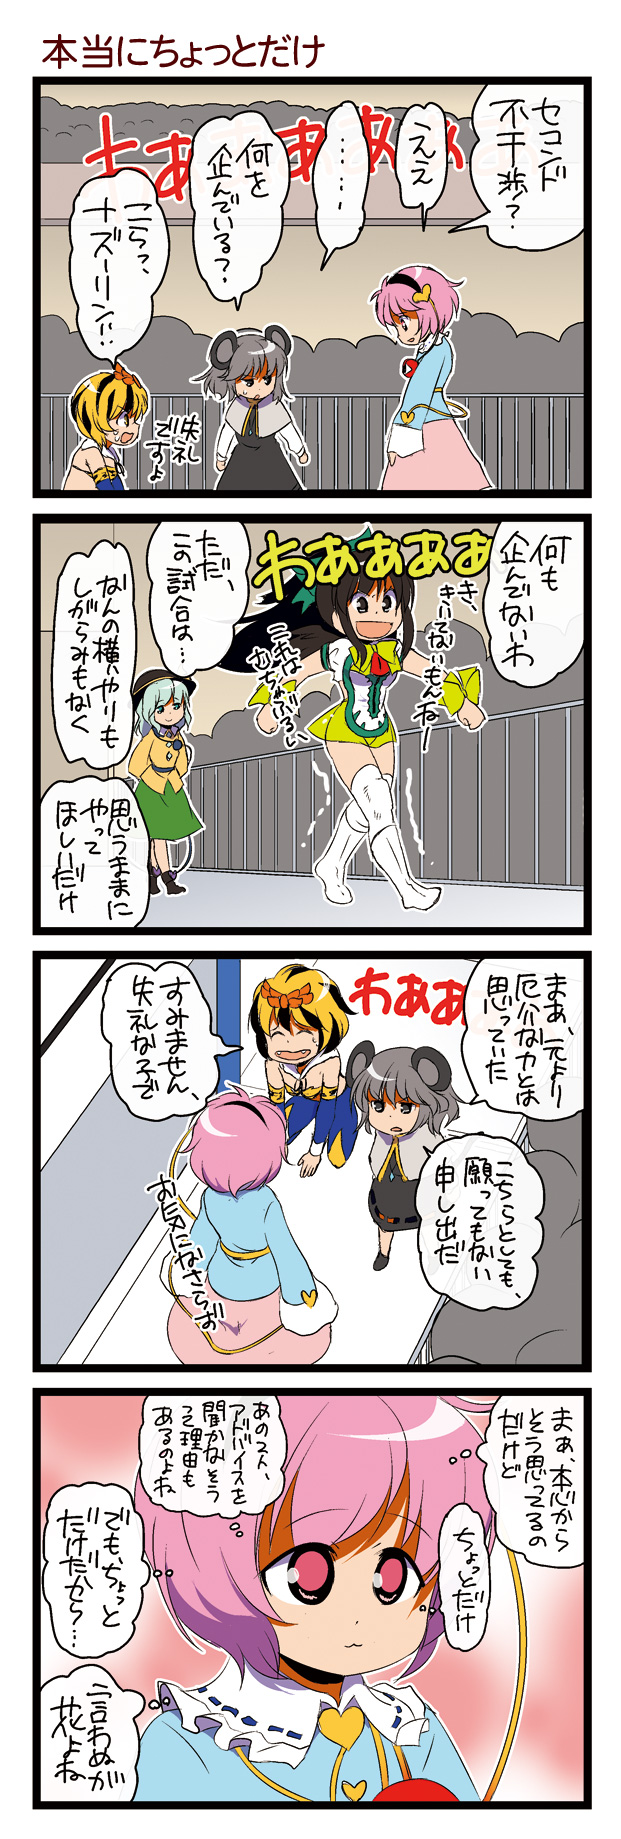 4koma comic dei_shirou highres komeiji_koishi komeiji_satori nazrin orenji_zerii reiuji_utsuho toramaru_shou touhou translated translation_request